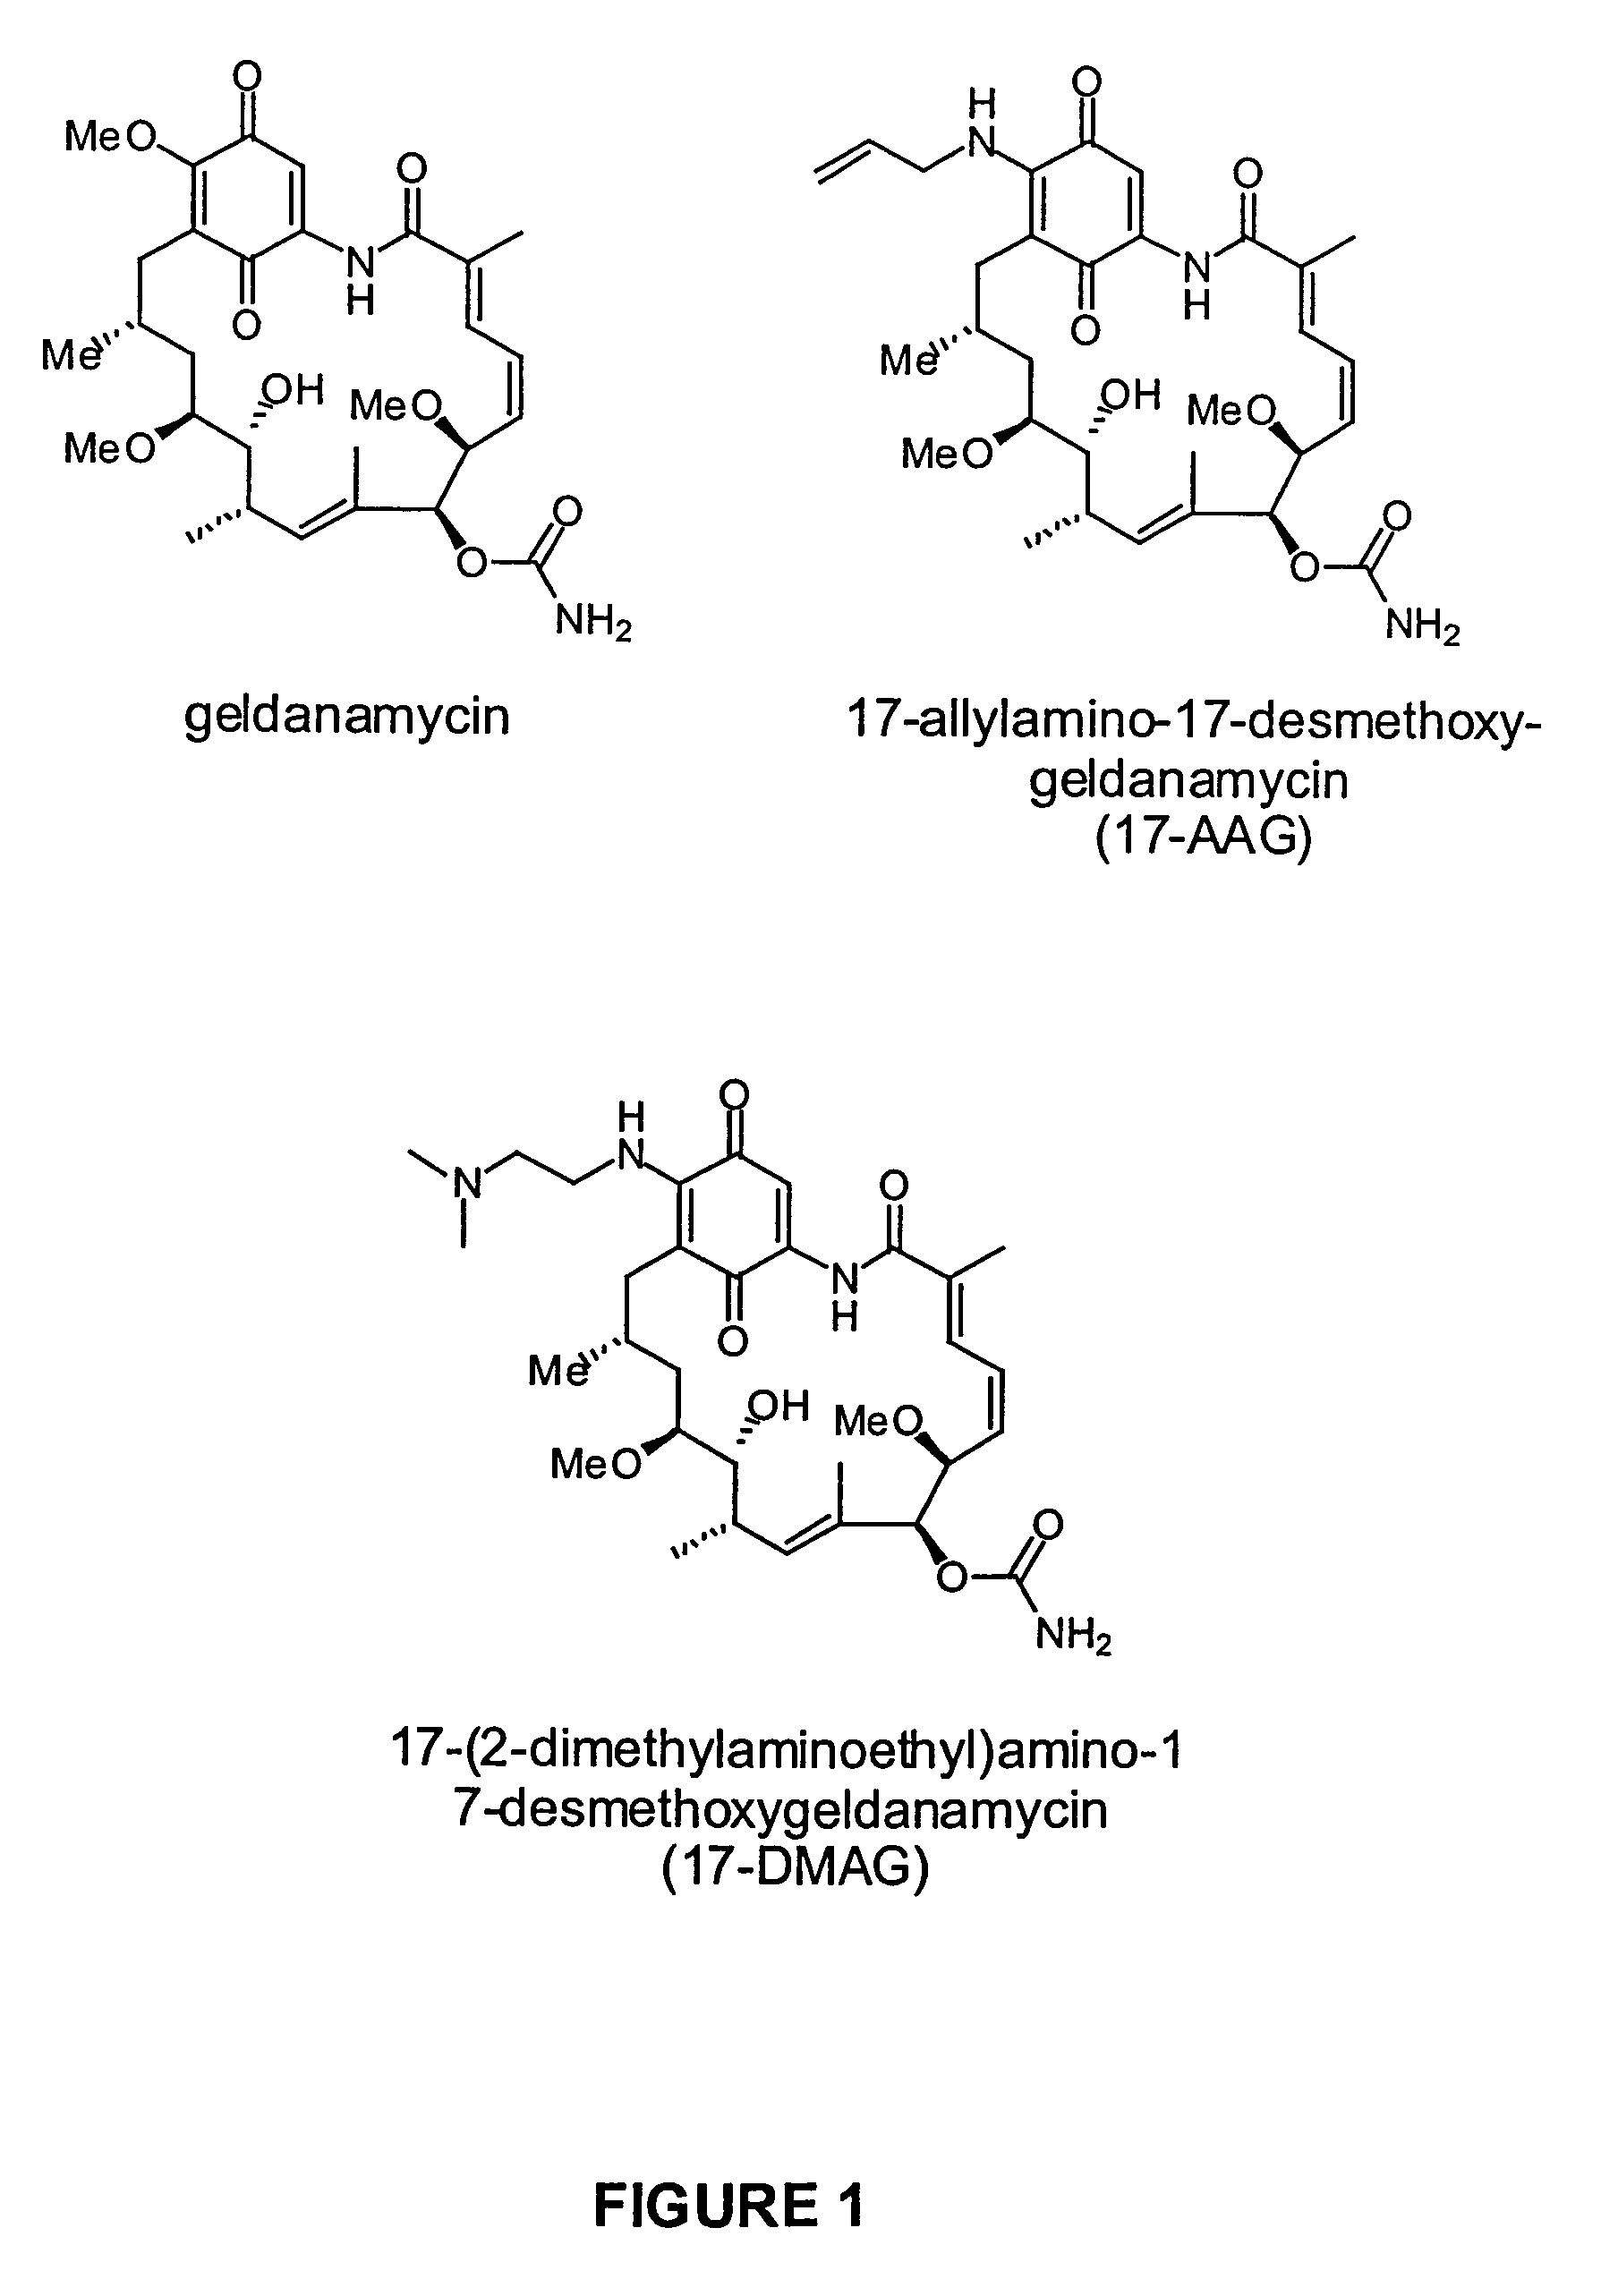 Benzoquinone ansamycins